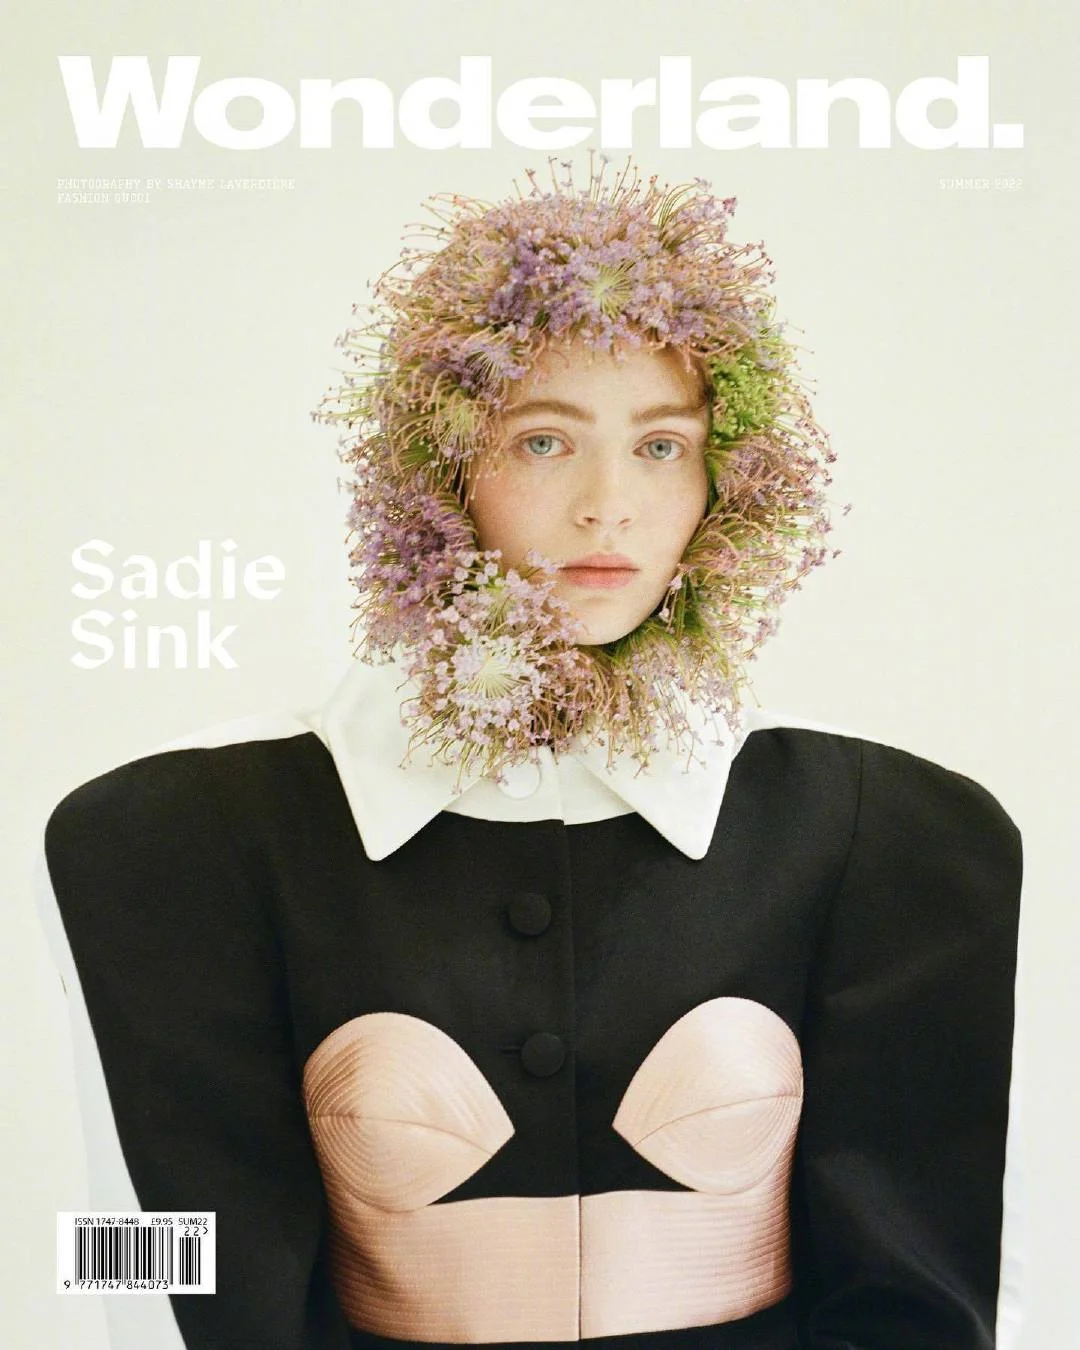 Sadie Sink, "Wonderland" magazine summer issue photo